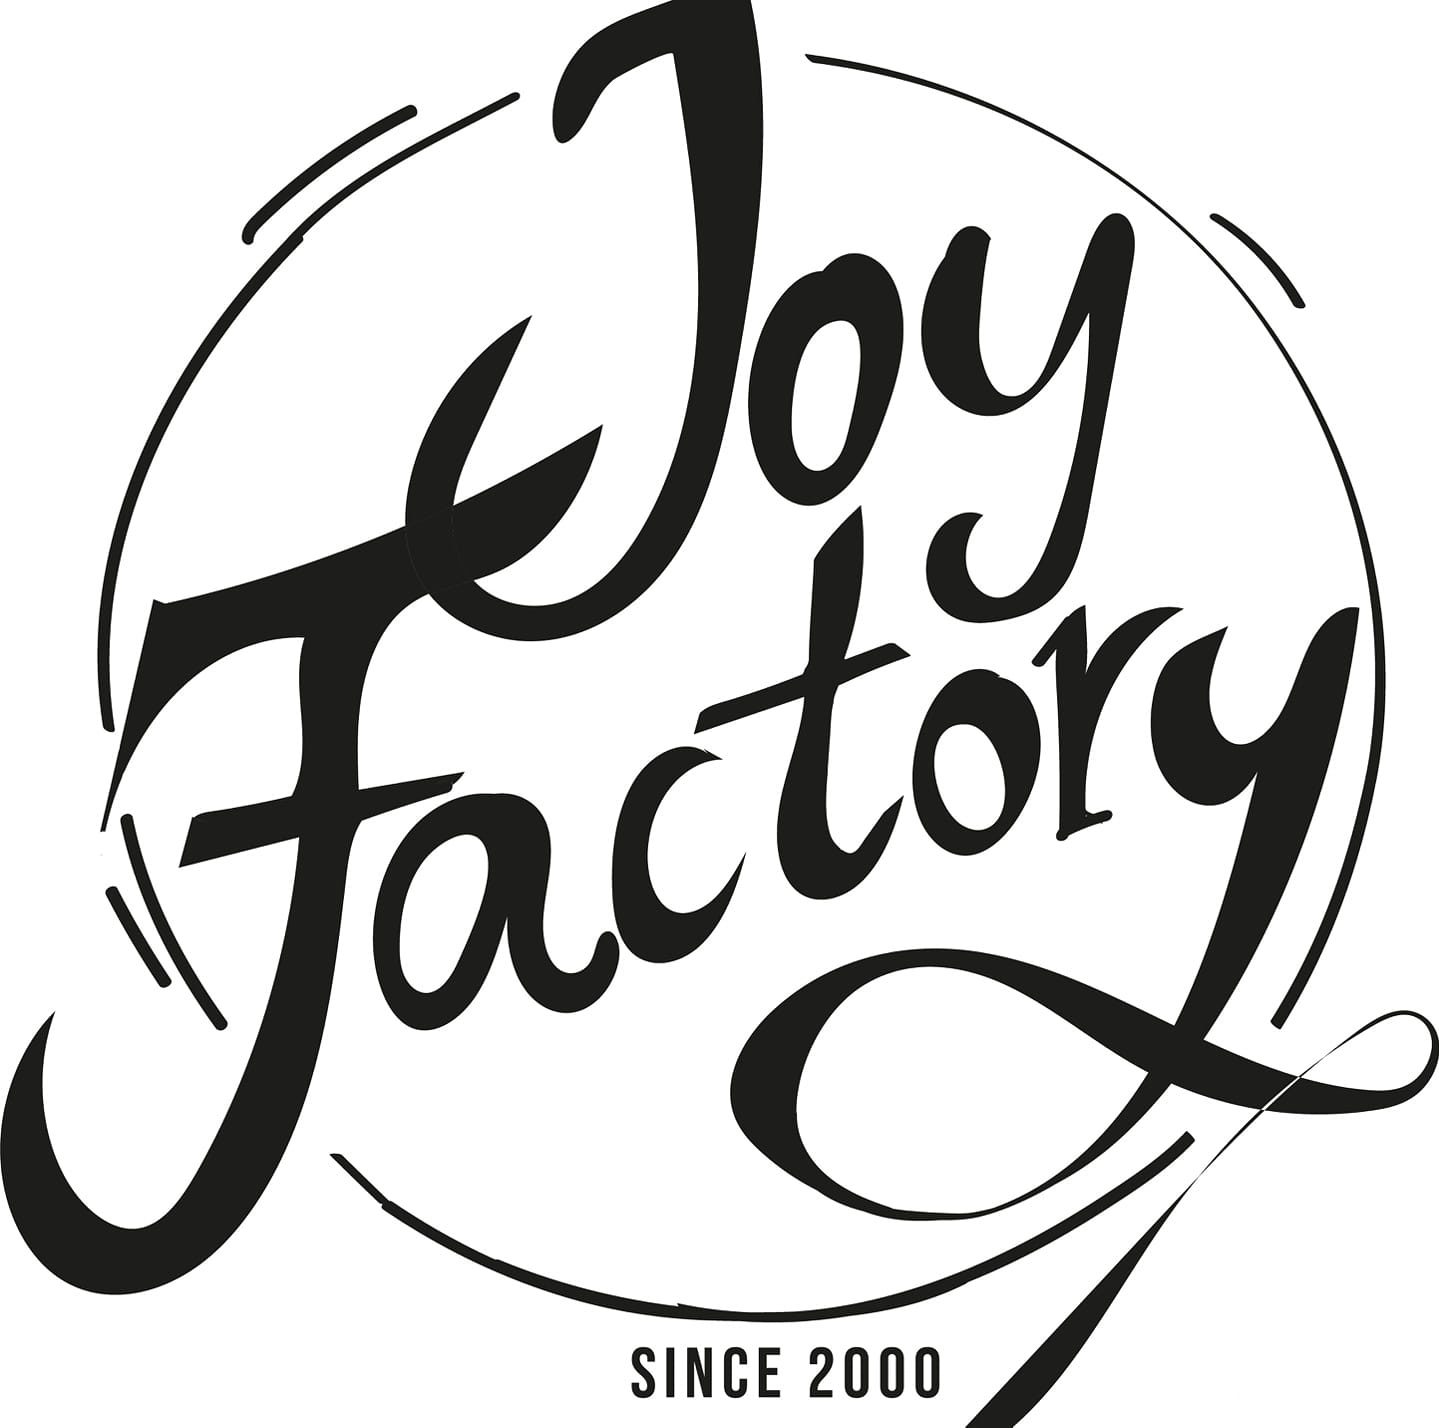 Joyfactory